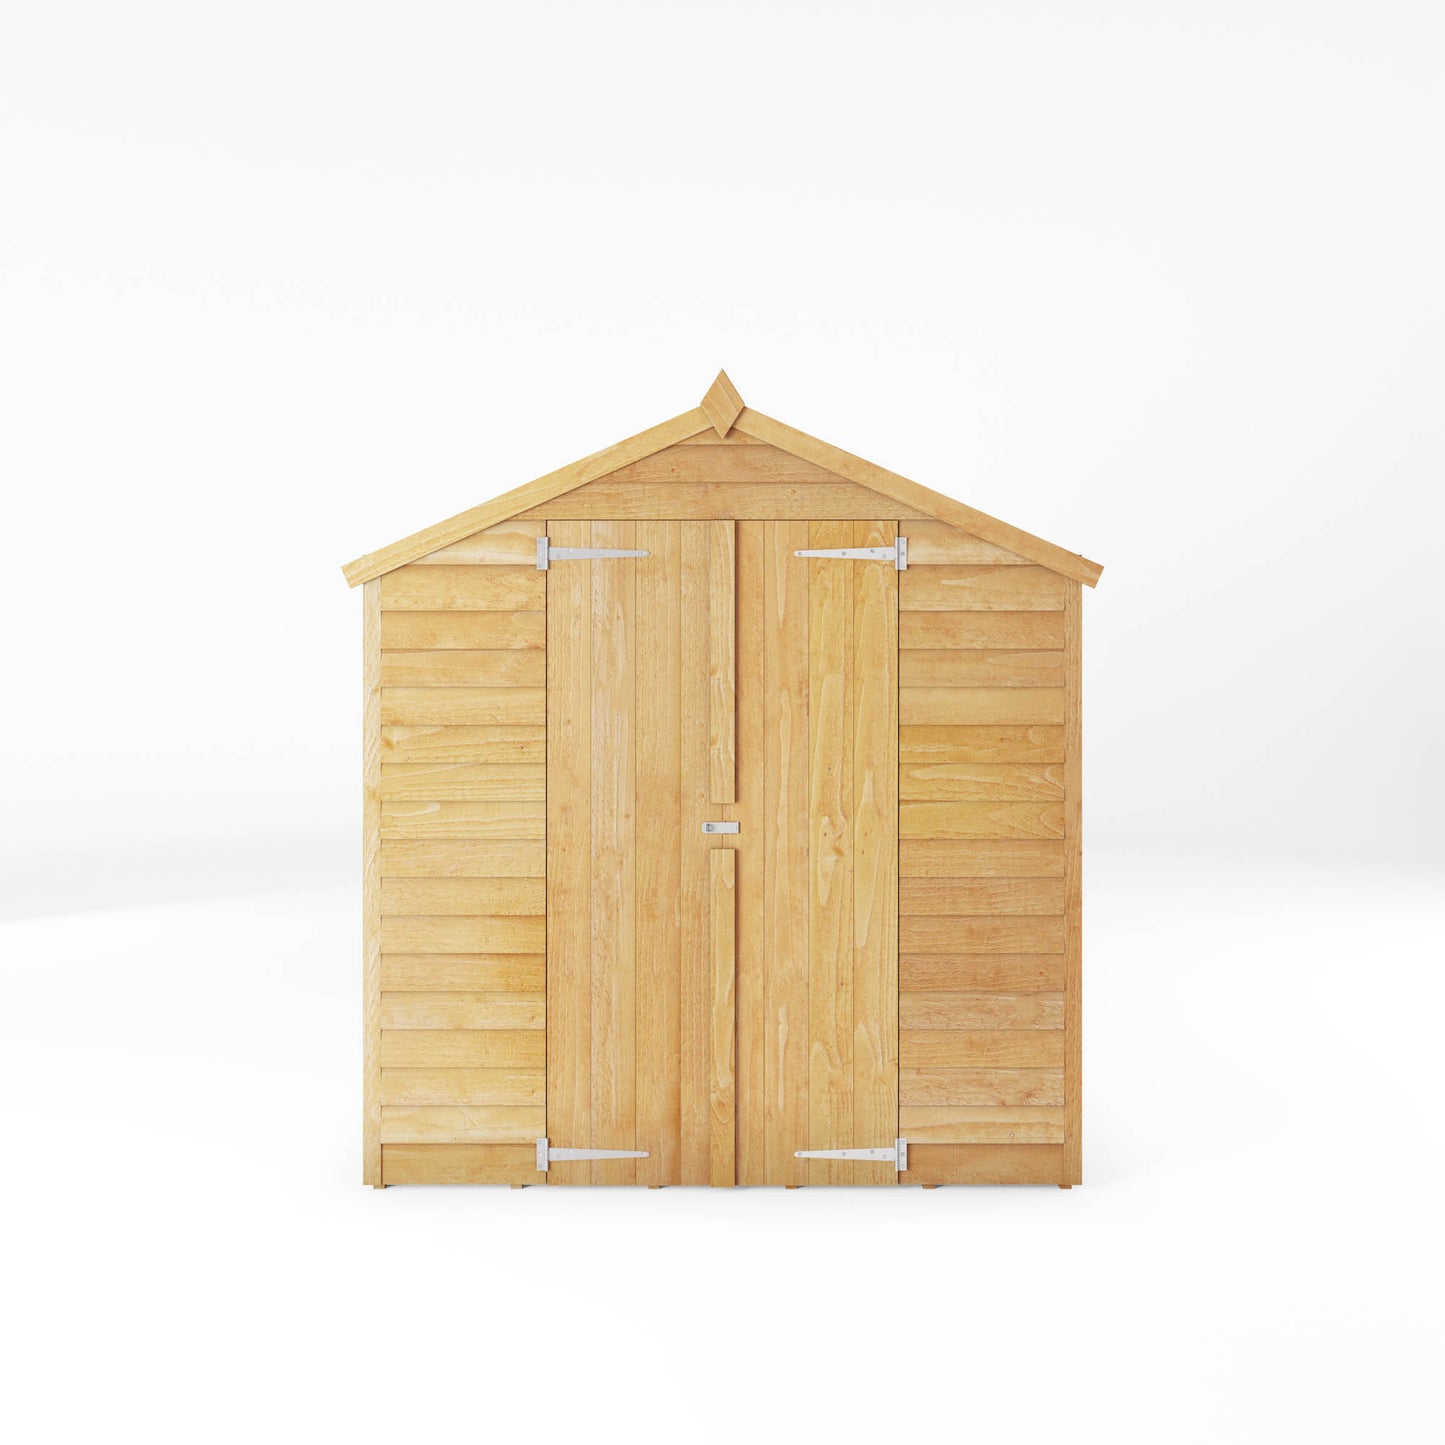 8 x 6 Overlap Double Door Apex Wooden Shed